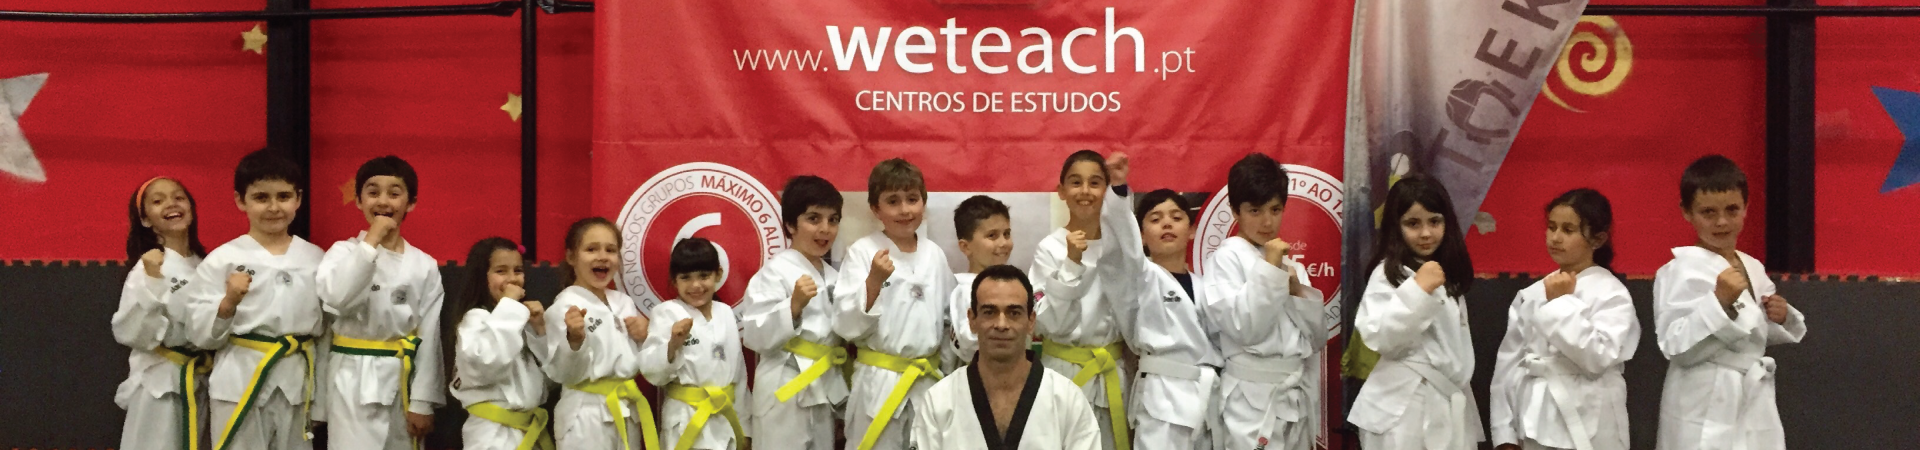 Weteach - Centros de Estudos - Atividades de Desporto - Taekwondo